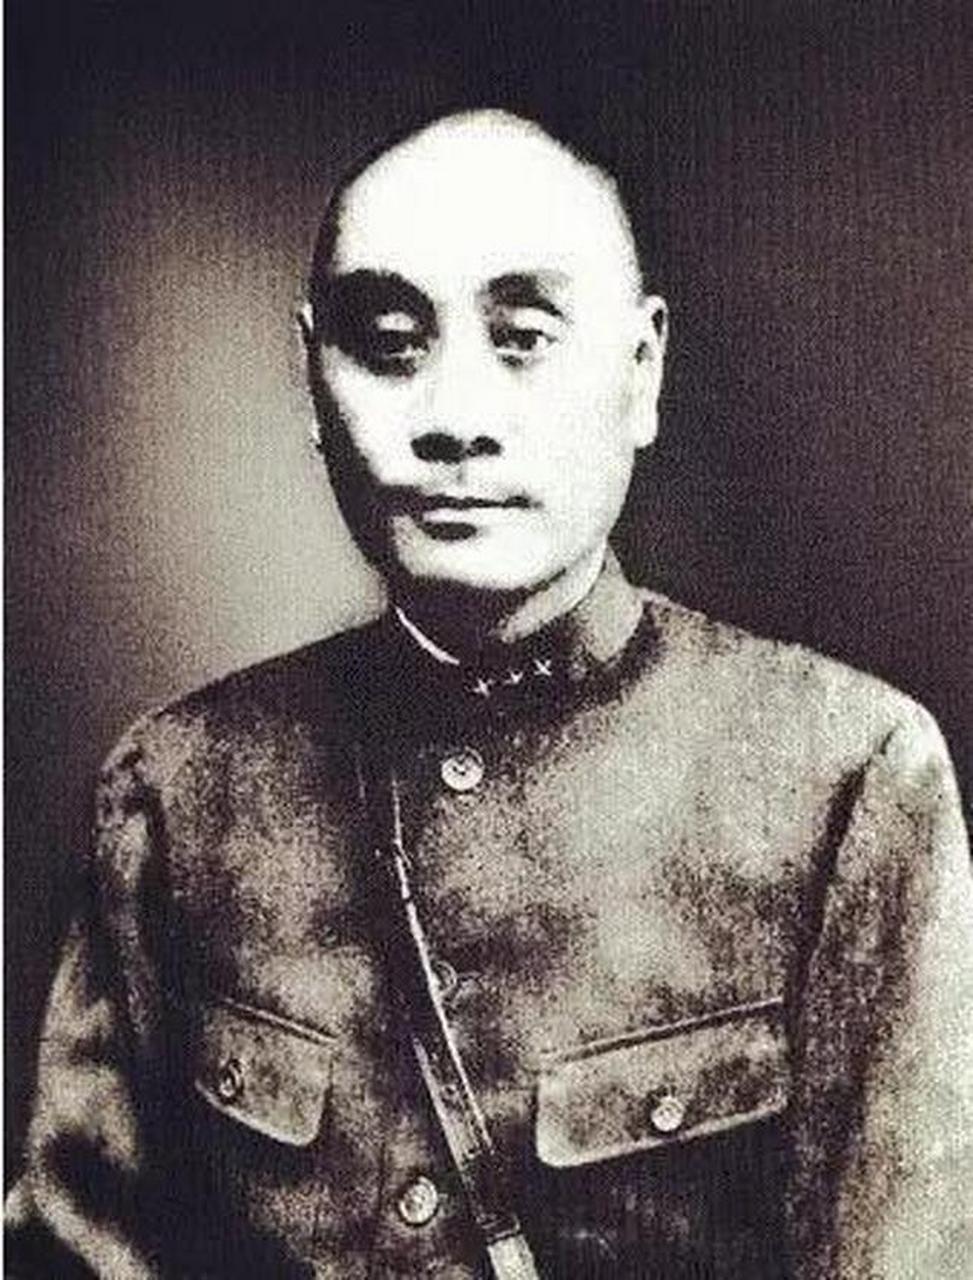 1938年1月17日,躺在病床上的刘湘将军已经快不行了,从前线赶来的川军